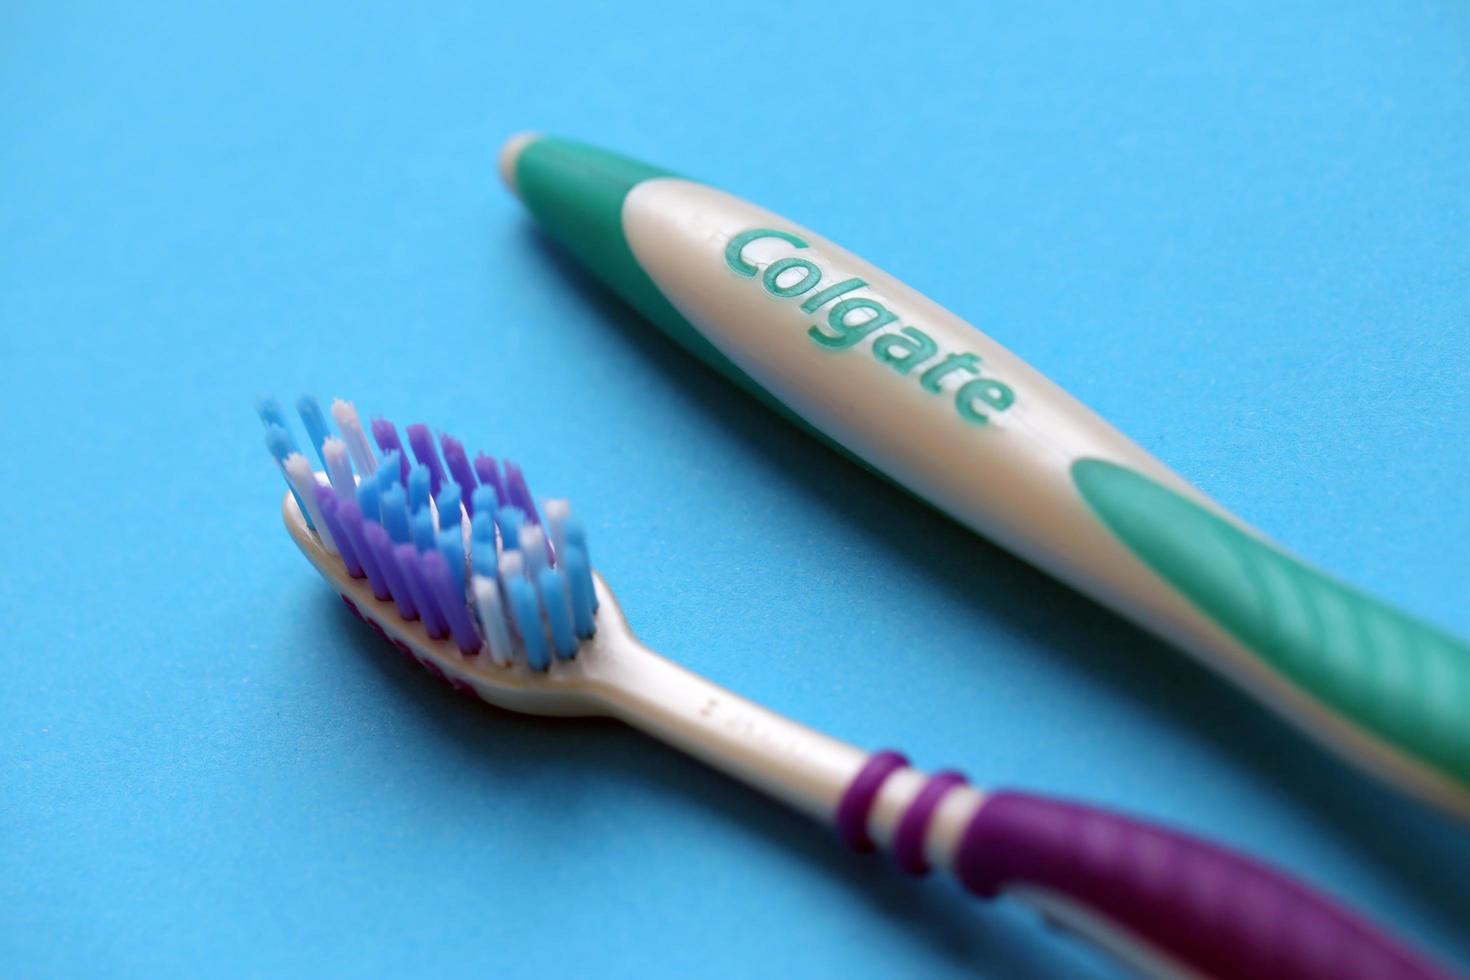 ternopil, ukraina - juni 23, 2022 colgate tandborstar, en varumärke av oral hygien Produkter tillverkad förbi amerikan konsumtionsvaror företag colgate-palmolive foto